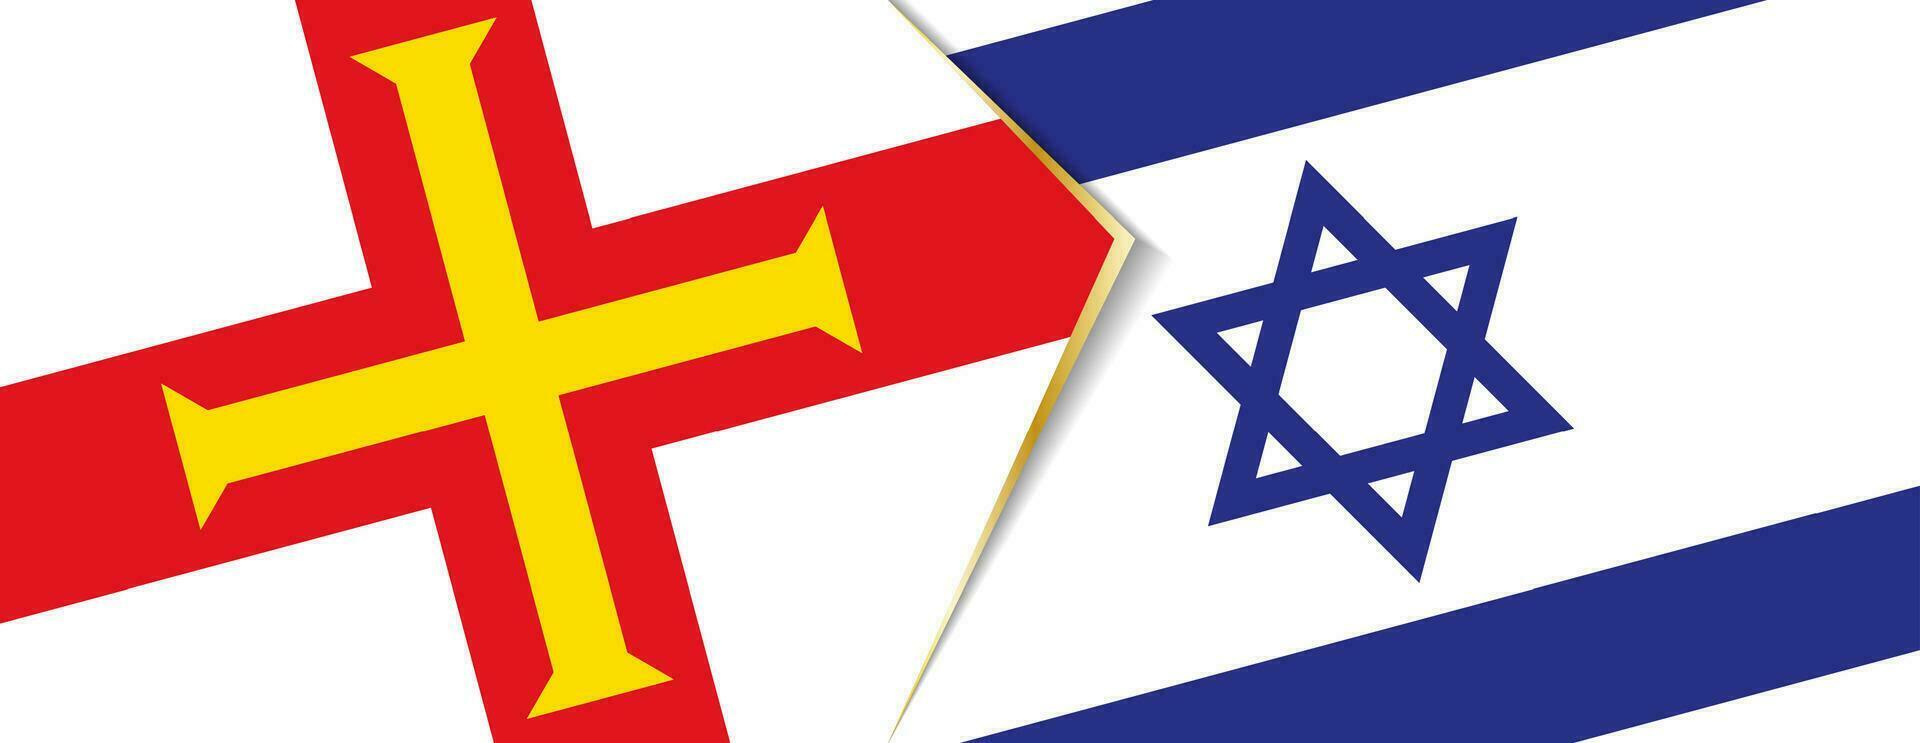 guernsey y Israel banderas, dos vector banderas